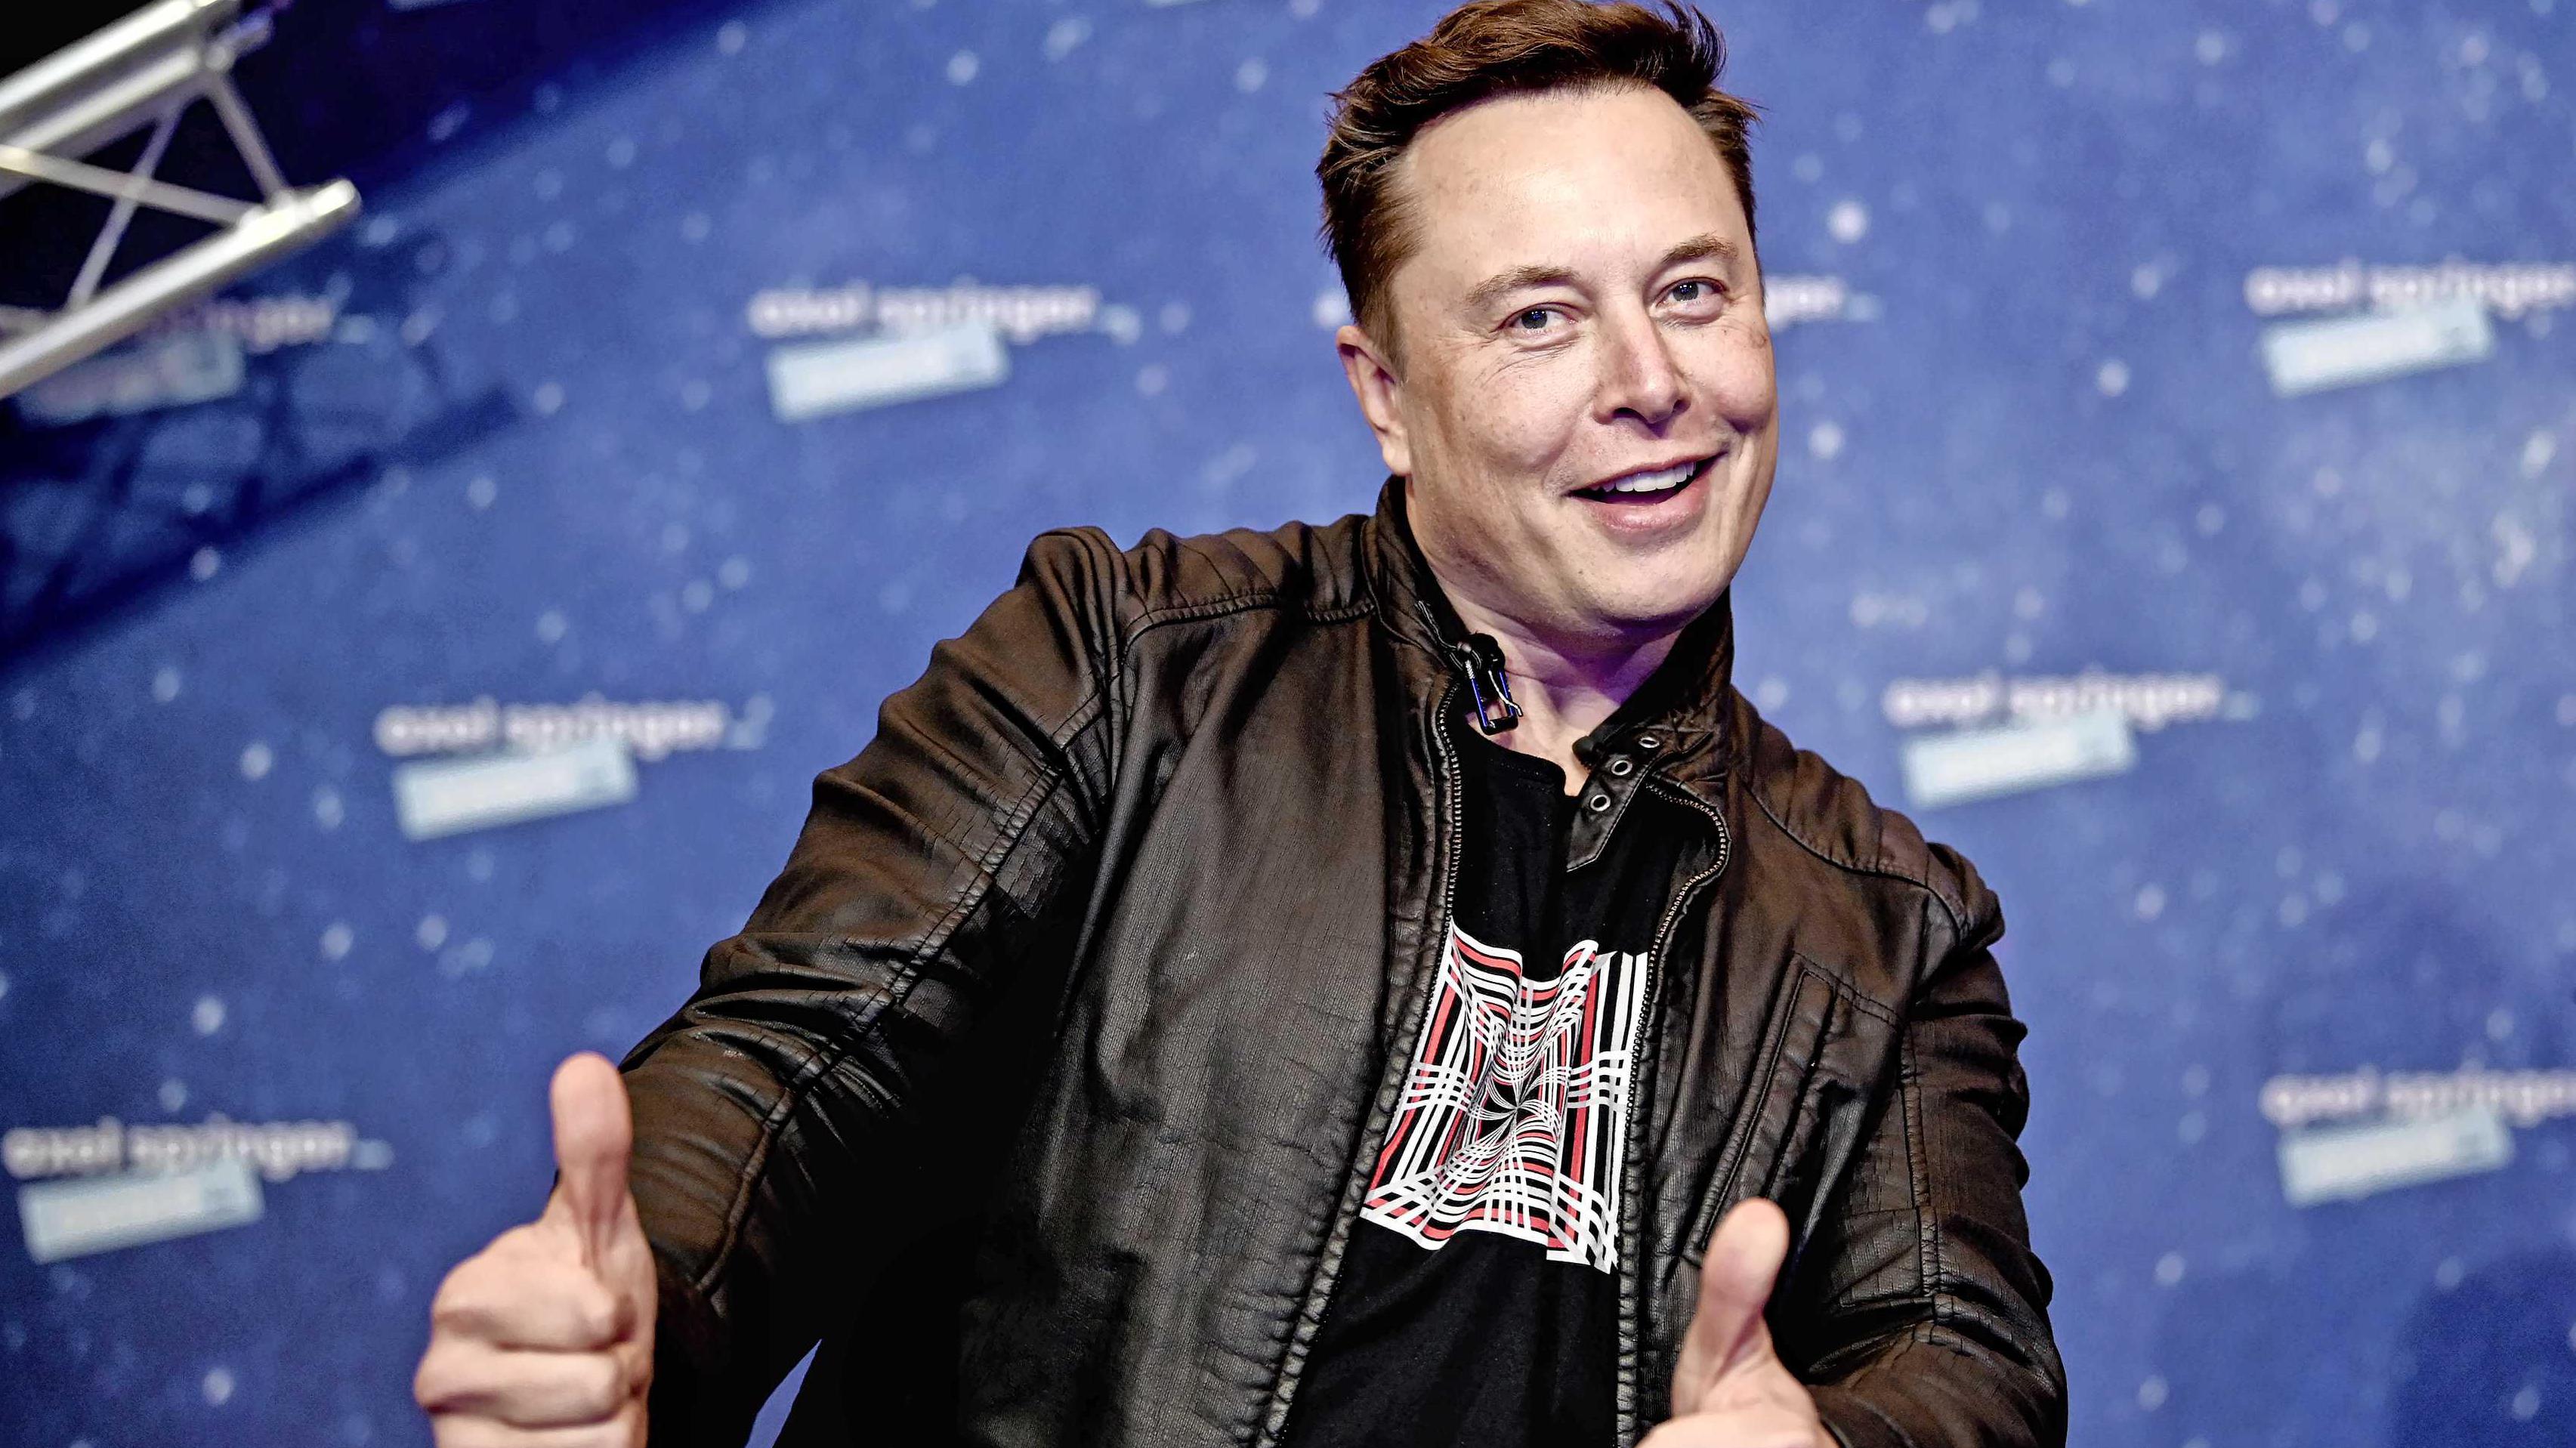 Twitterbaas Elon Musk is (even) rijkste persoon ter wereld af